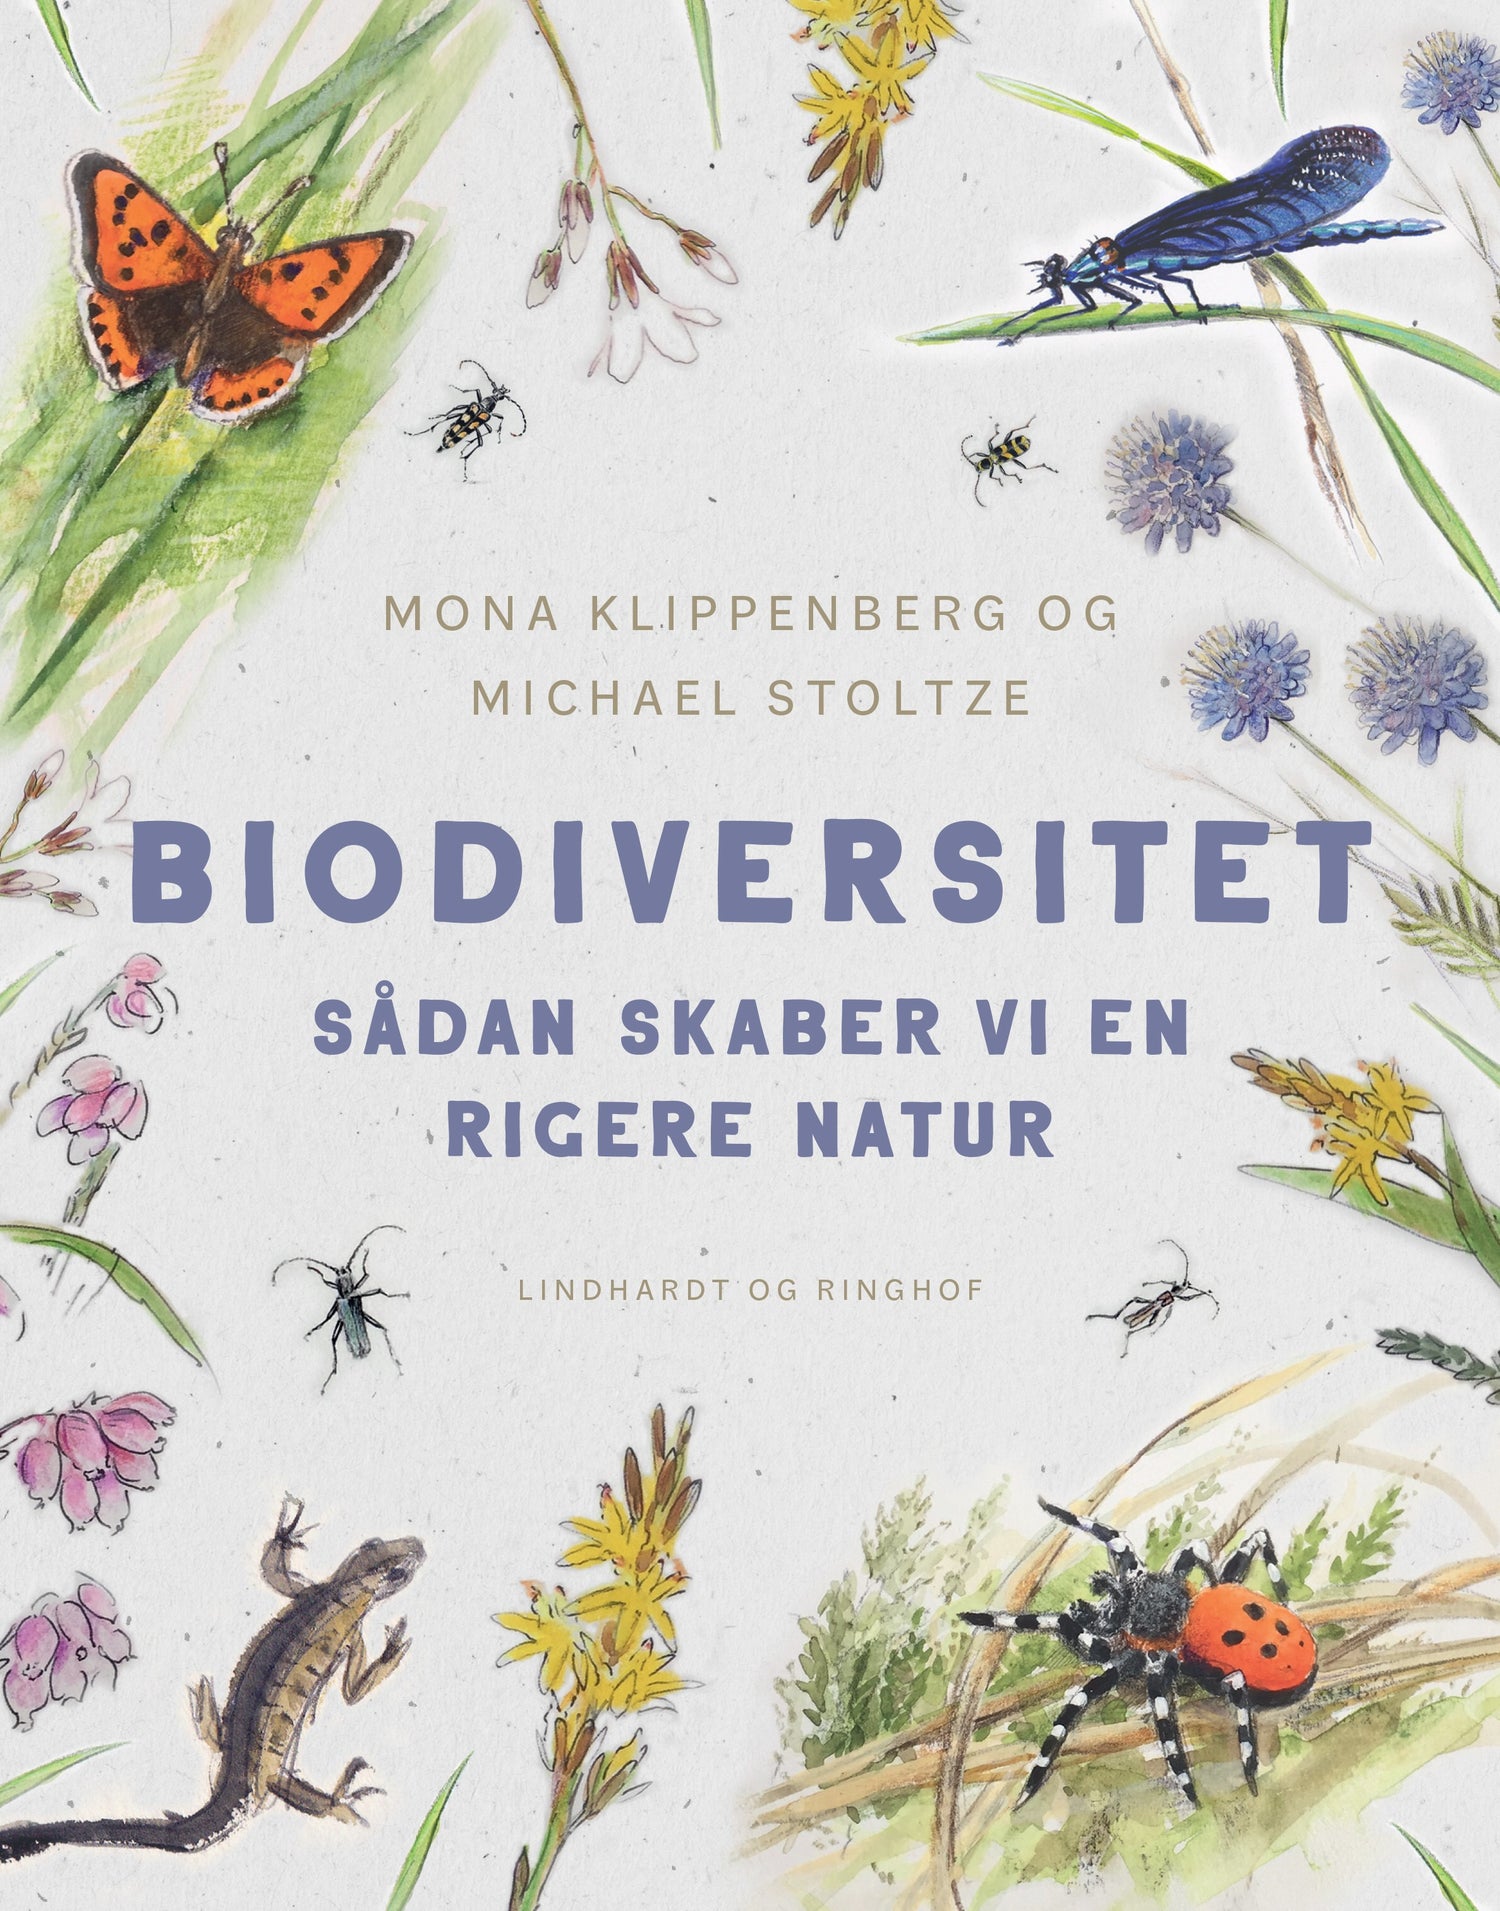 Bøger om vilde haver og biodiversitet